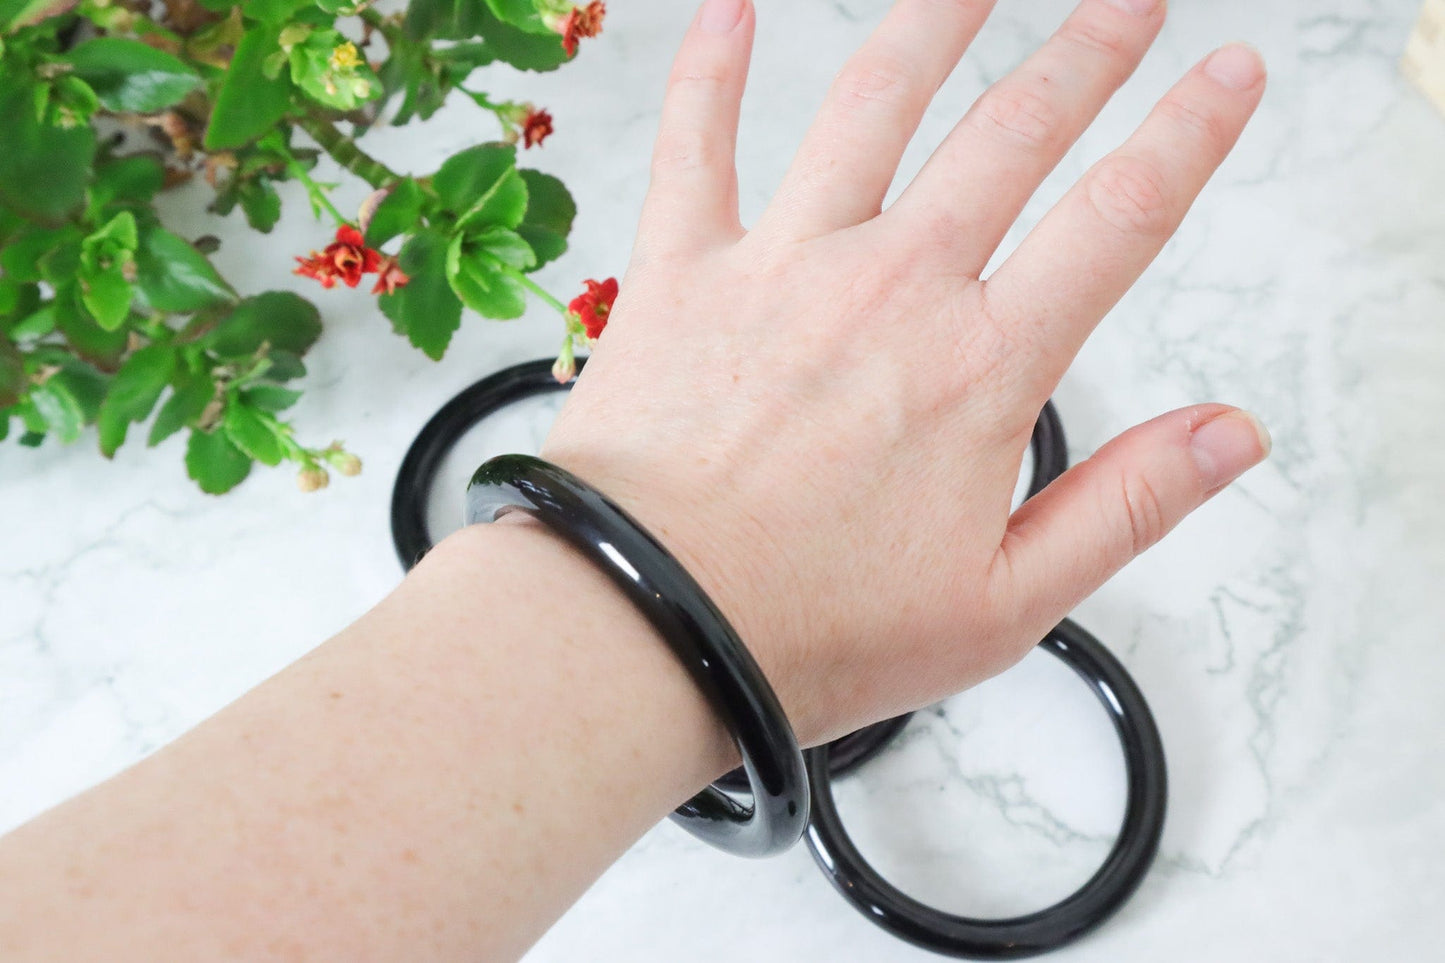 Black Obsidian Bangles - Protection/Emotional Support Bracelets Tali & Loz